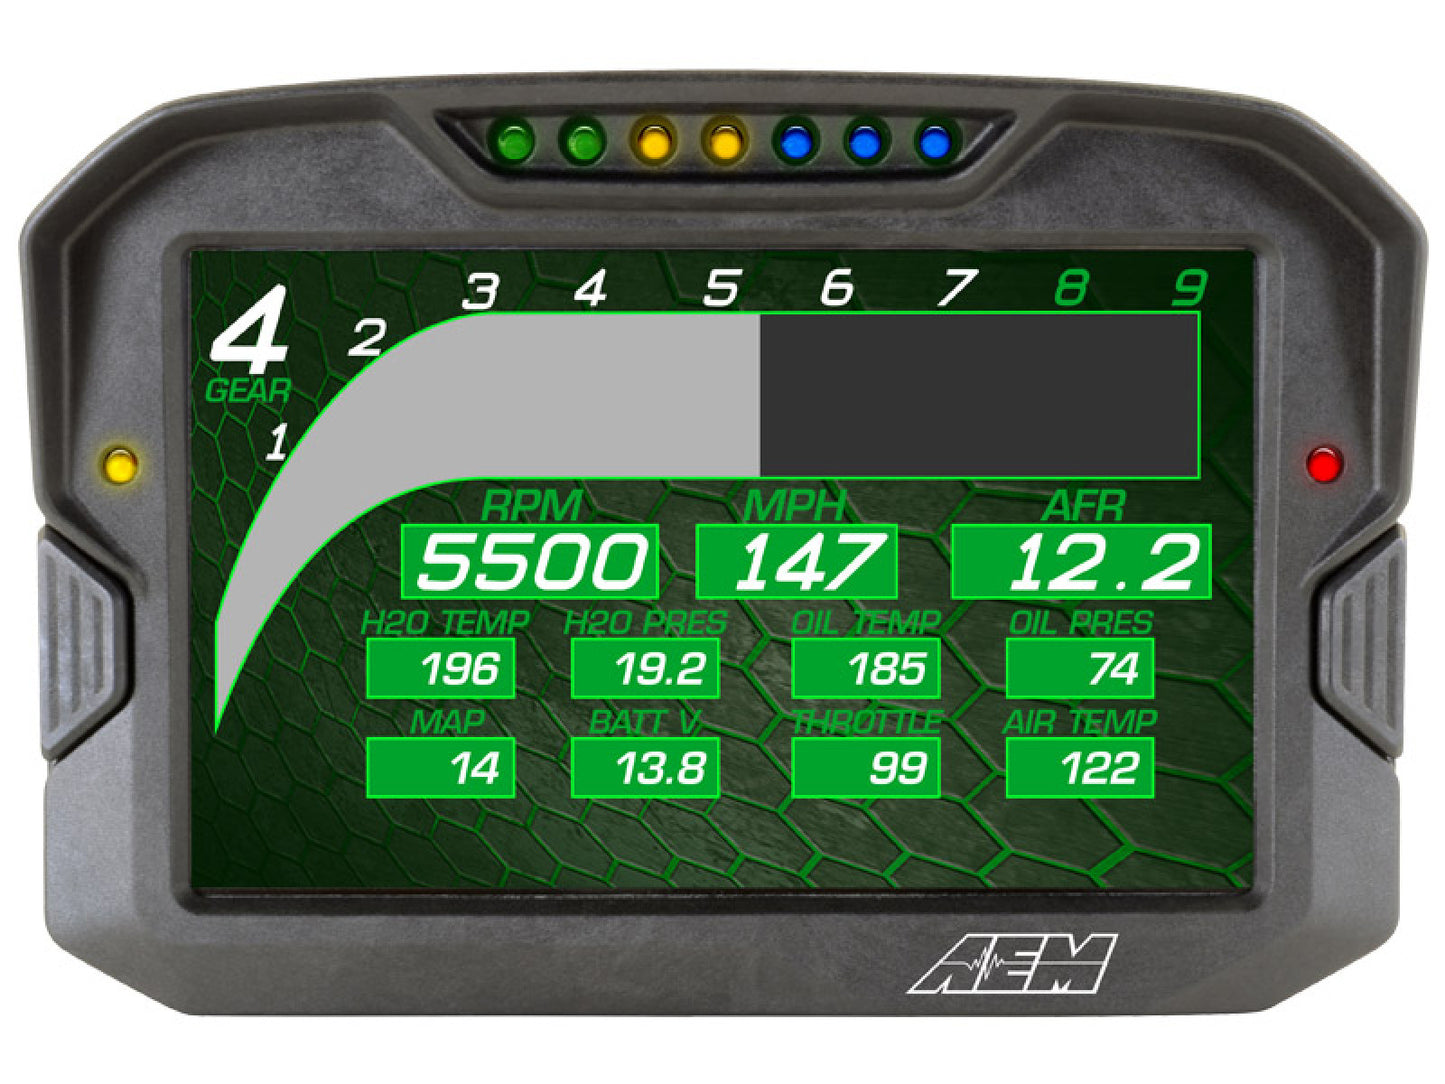 AEM CD-7 Carbon Digital Racing and Logging Dash Display - Logging / Non-GPS 30-5701